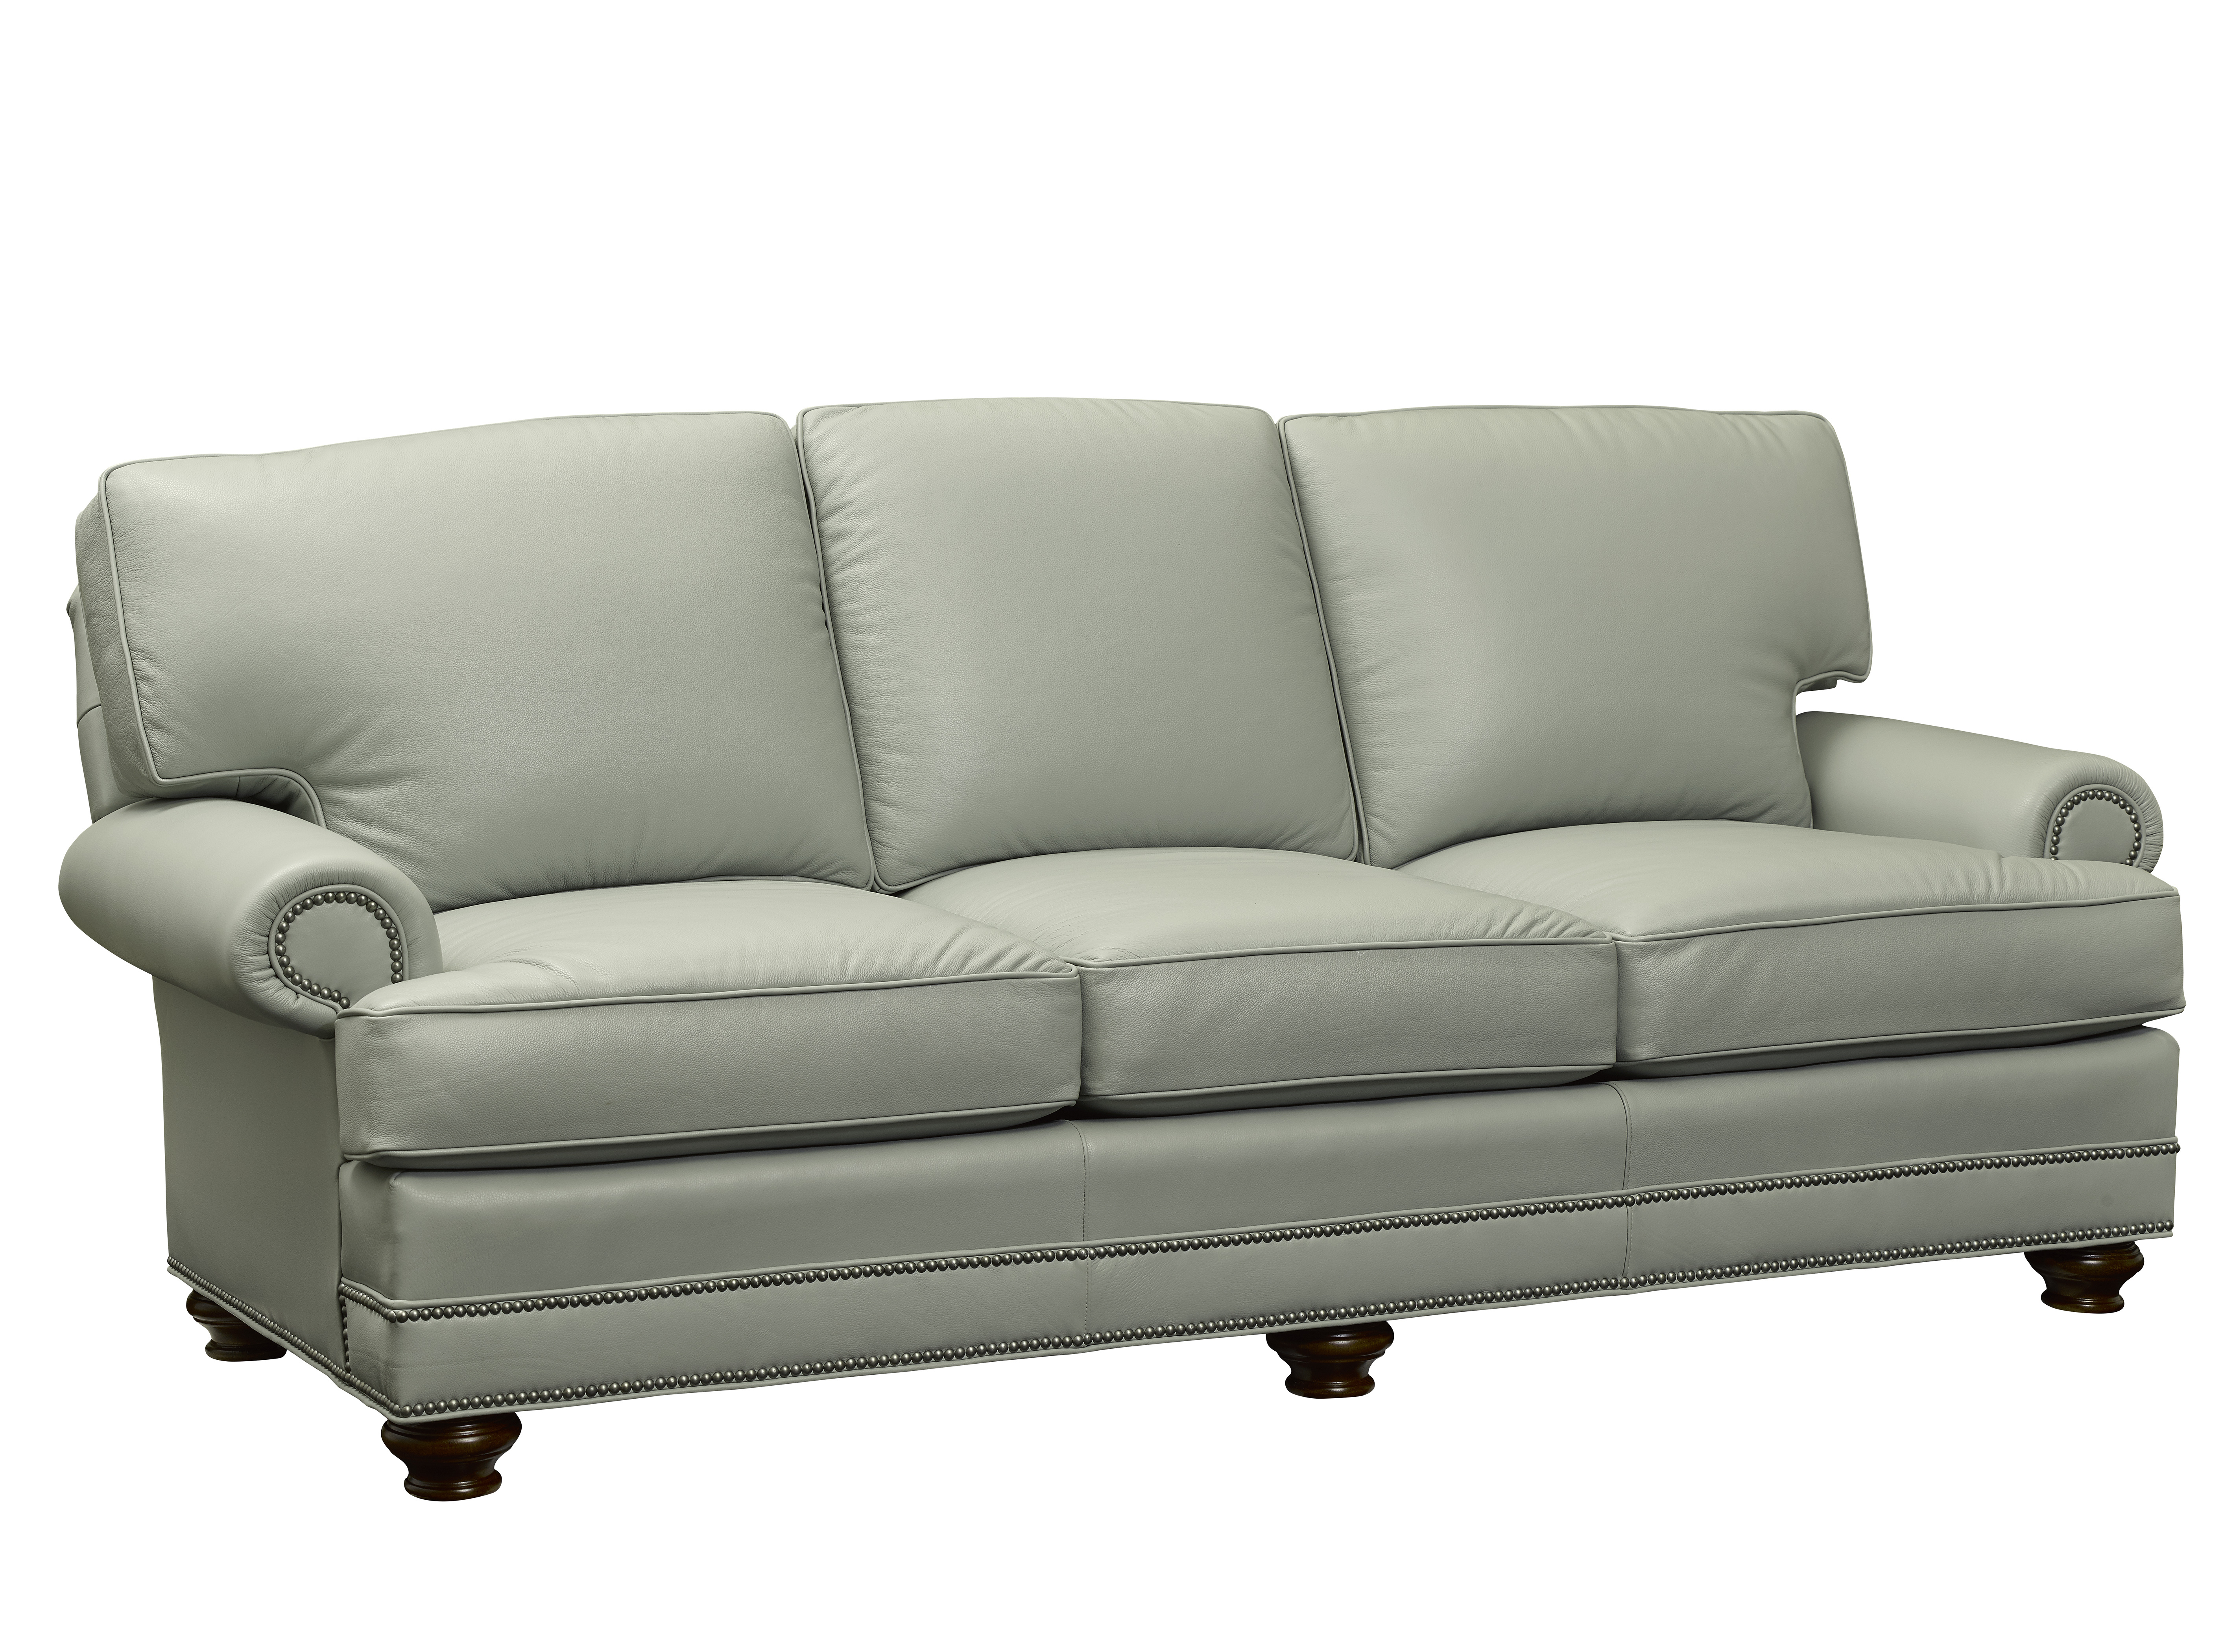 2560-68S Garland Sleeper Sofa